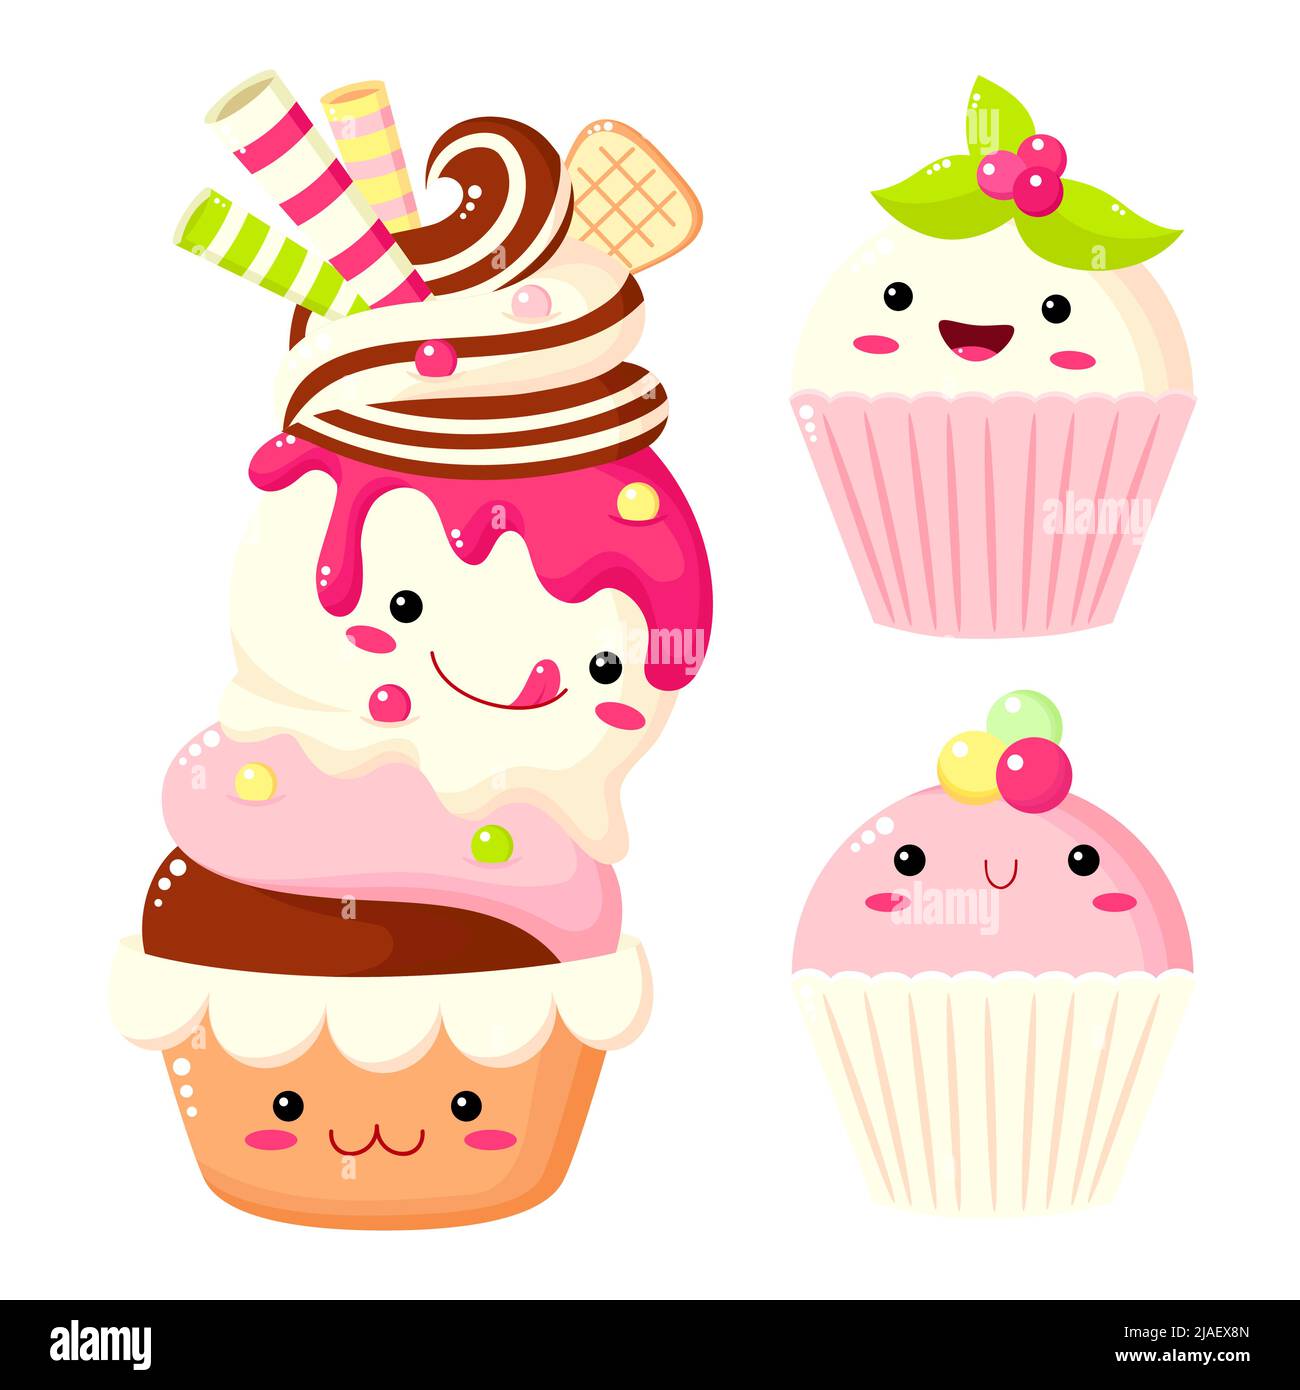 Ensemble de gâteau mignon, muffin, cupcake. Collection de personnages de desserts sucrés kawaii avec visage souriant et joues roses pour un design doux. Illustration vectorielle Illustration de Vecteur